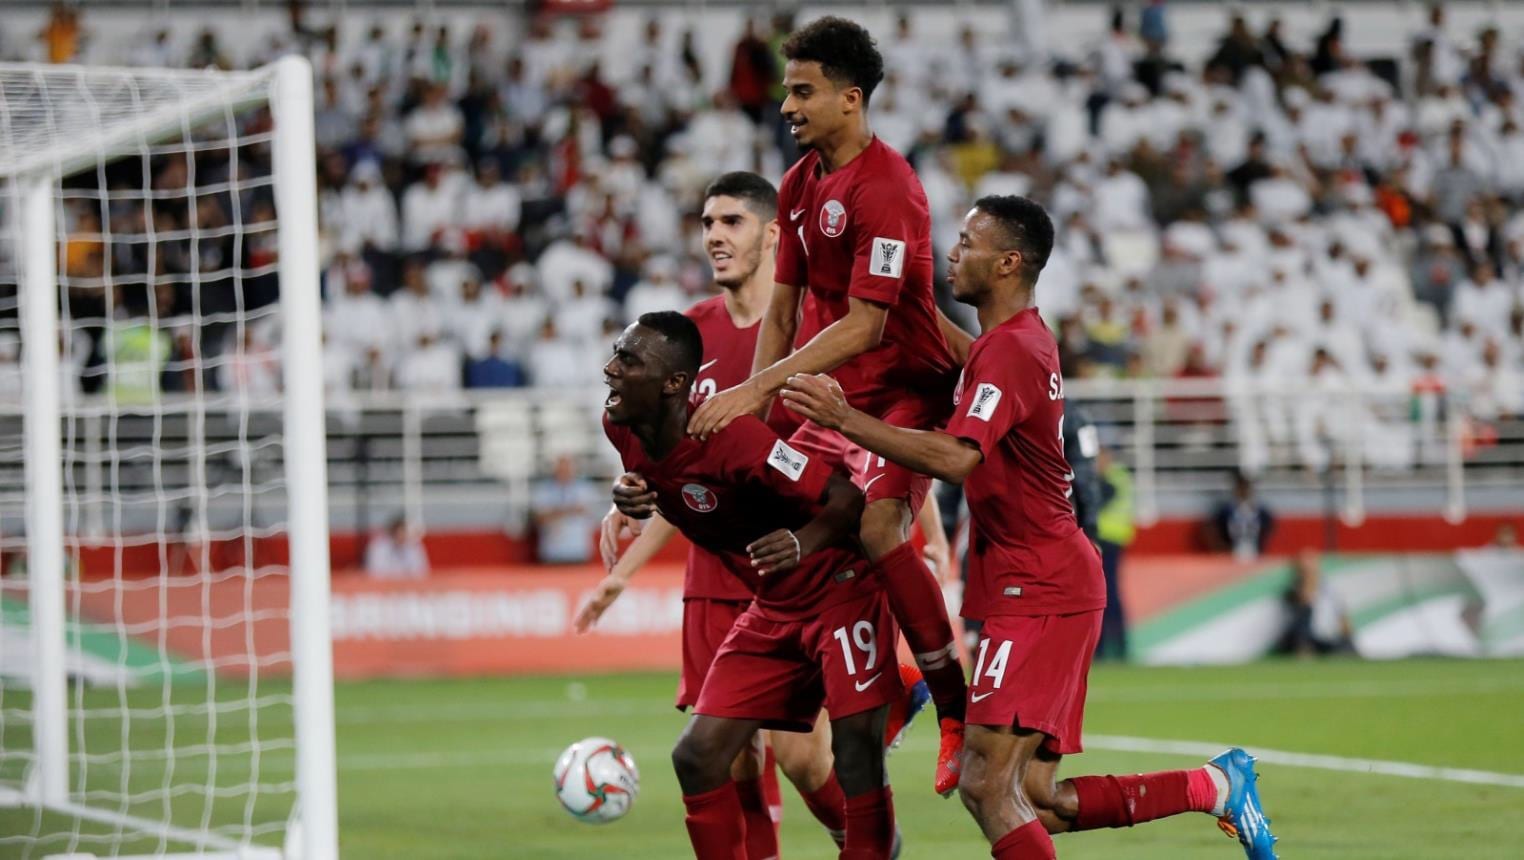 منتخب قطر يحسم موقعة “الإخوة الأعداء” برباعية ويتأهل إلى نهائي آسيا على حساب البلد المضيف